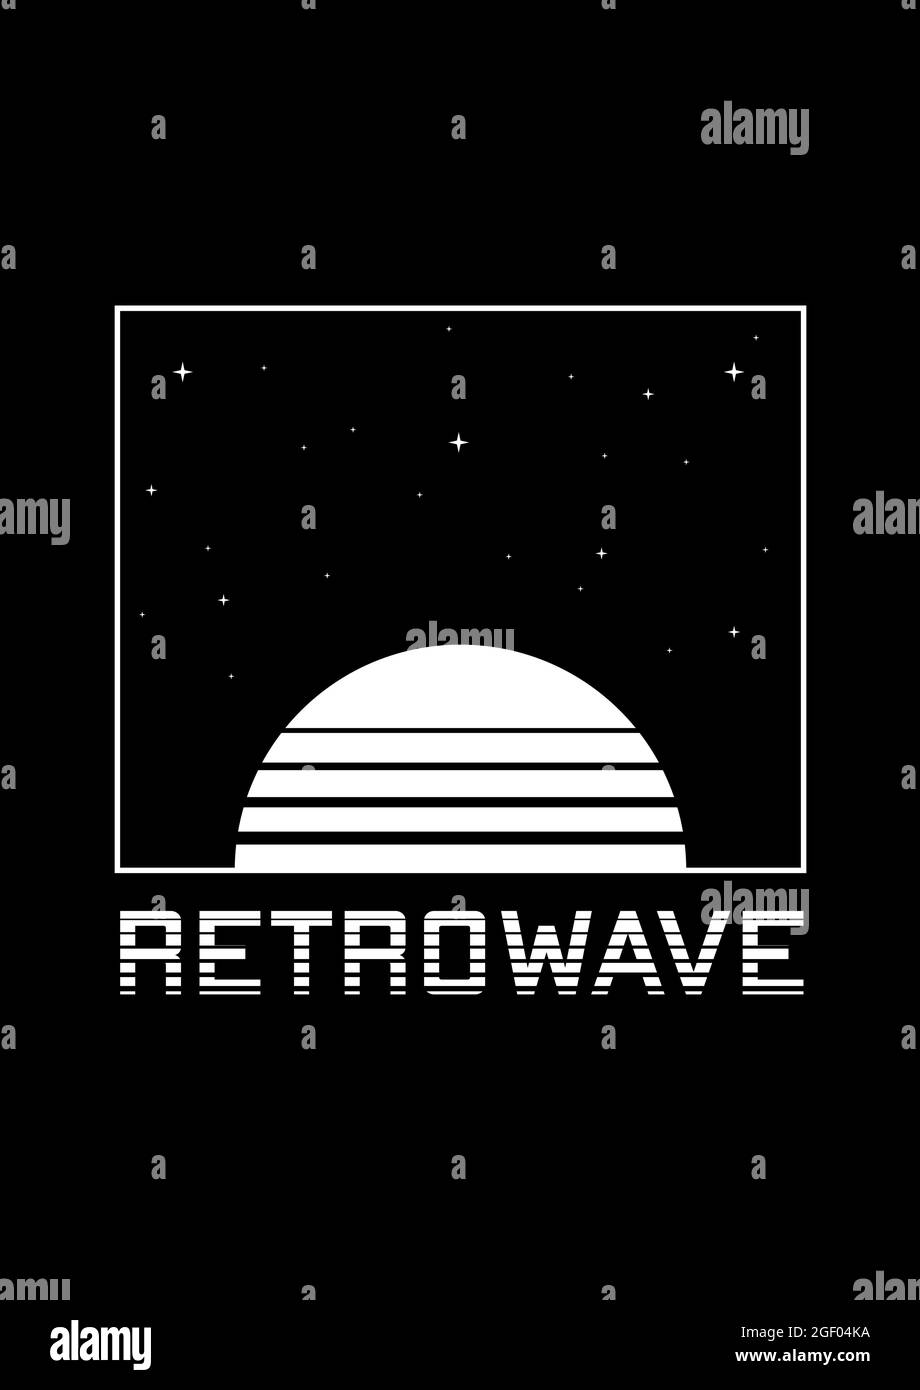 RetroWave T-Shirt und Bekleidungsdesign mit gestreifter Sonne, Sternenhimmel und Schlagzeile RETROWAVE. Die Ästhetik der 1980er Jahre. Schwarz-Weiß-Druck. Vektor Stock Vektor